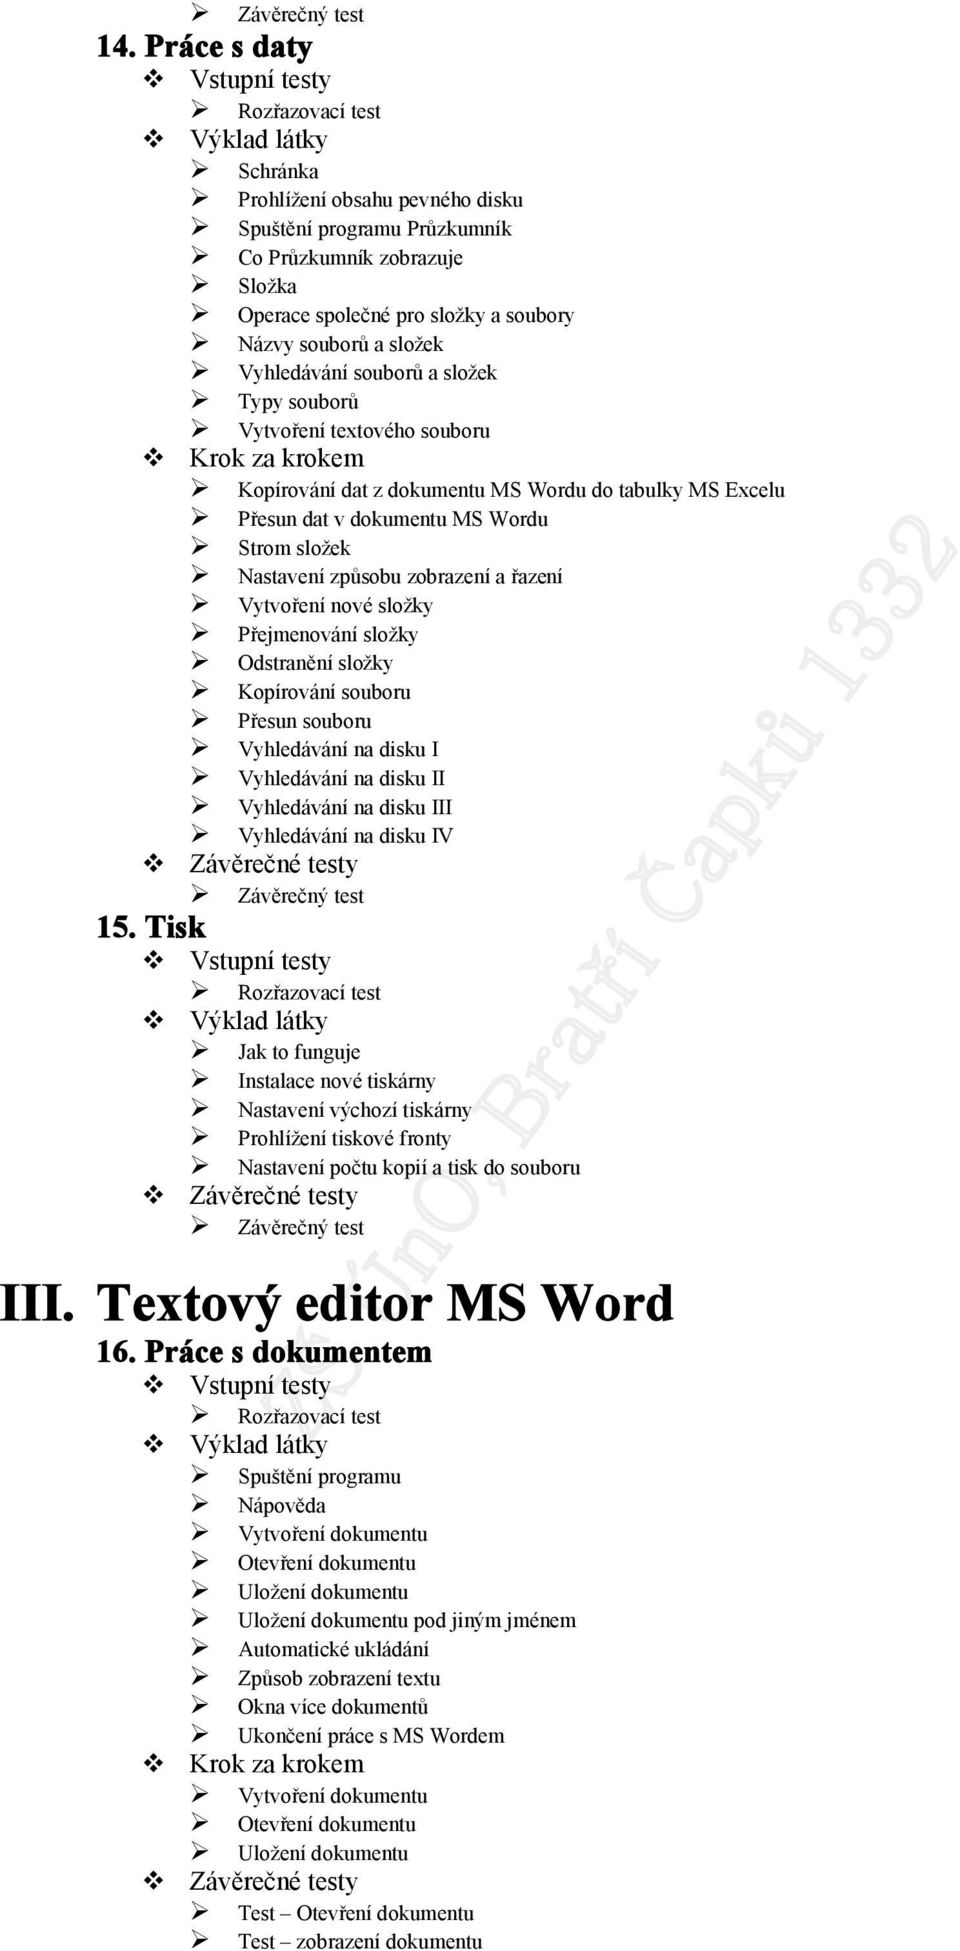 Typy souborů Vytvoření textového souboru Kopírování dat z dokumentu MS Wordu do tabulky MS Excelu Přesun dat v dokumentu MS Wordu Strom složek Nastavení způsobu zobrazení a řazení Vytvoření nové